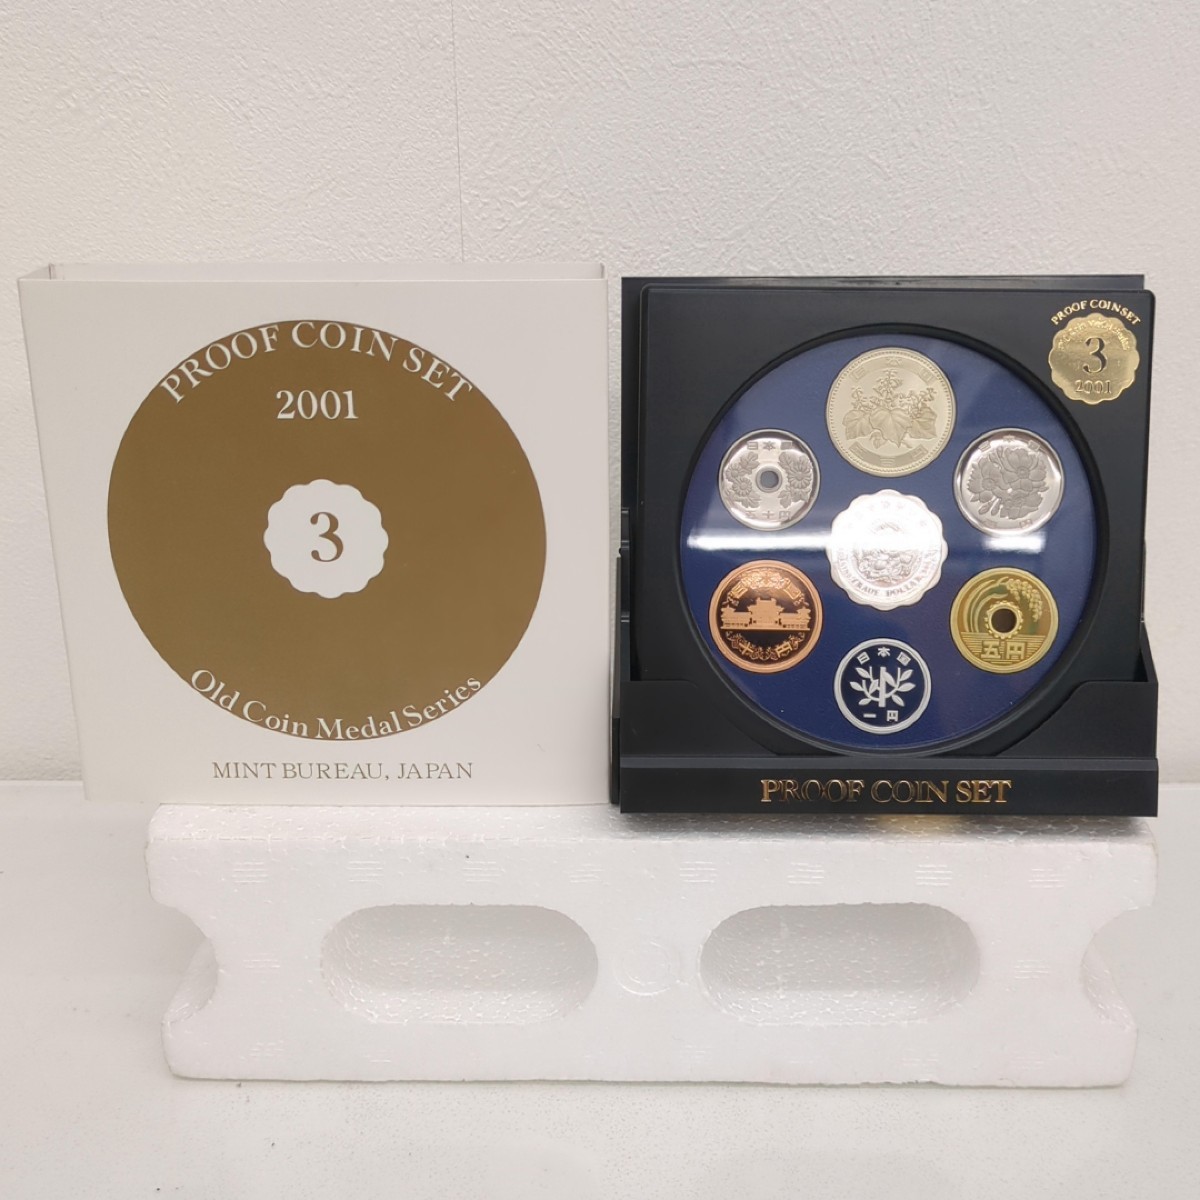 オールドコイン メダルシリーズ プルーフ貨幣セット PROOF COIN SET Old Coin Medal Series 2001 平成13年 純銀メダル入り 大蔵省 造幣局_画像1